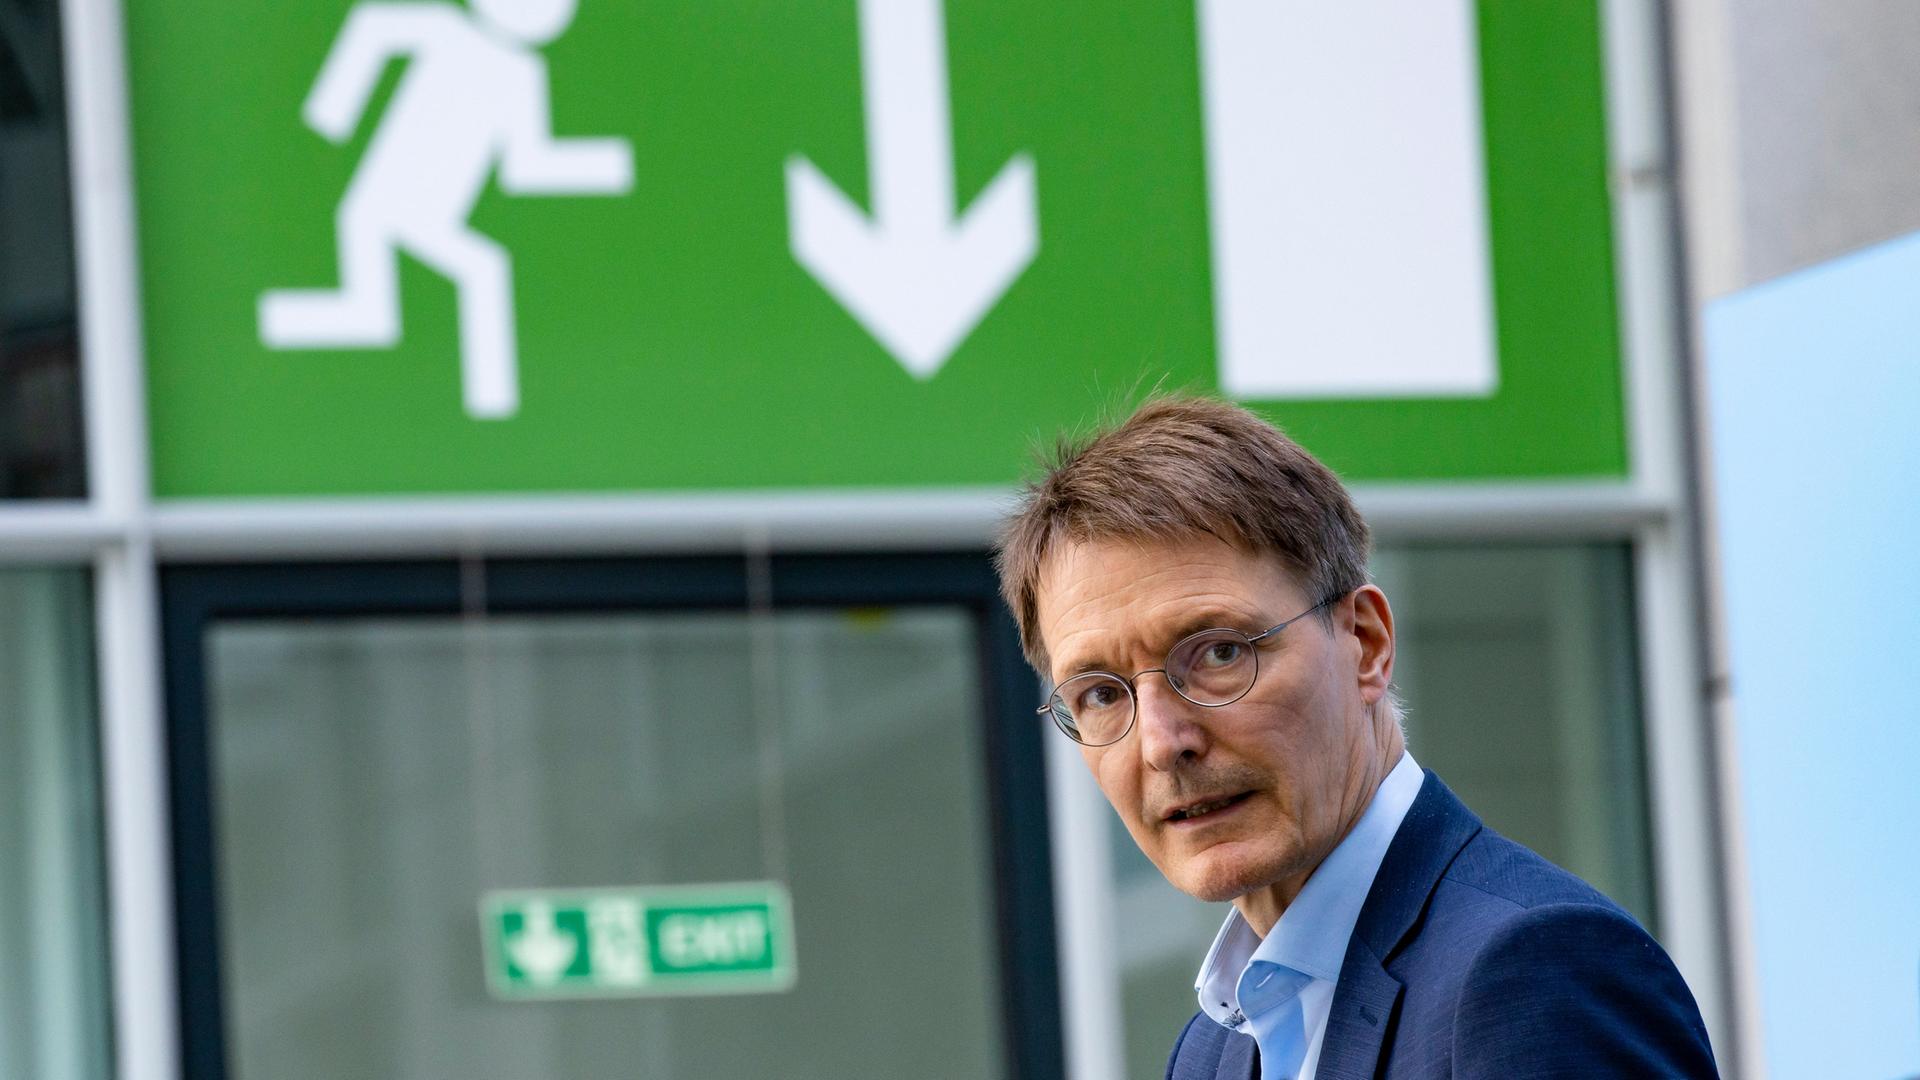 Gesundheitsminister Karl Lauterbach blickt Richtung Kamera, er steht unter einem grünen Notausgang-Schild